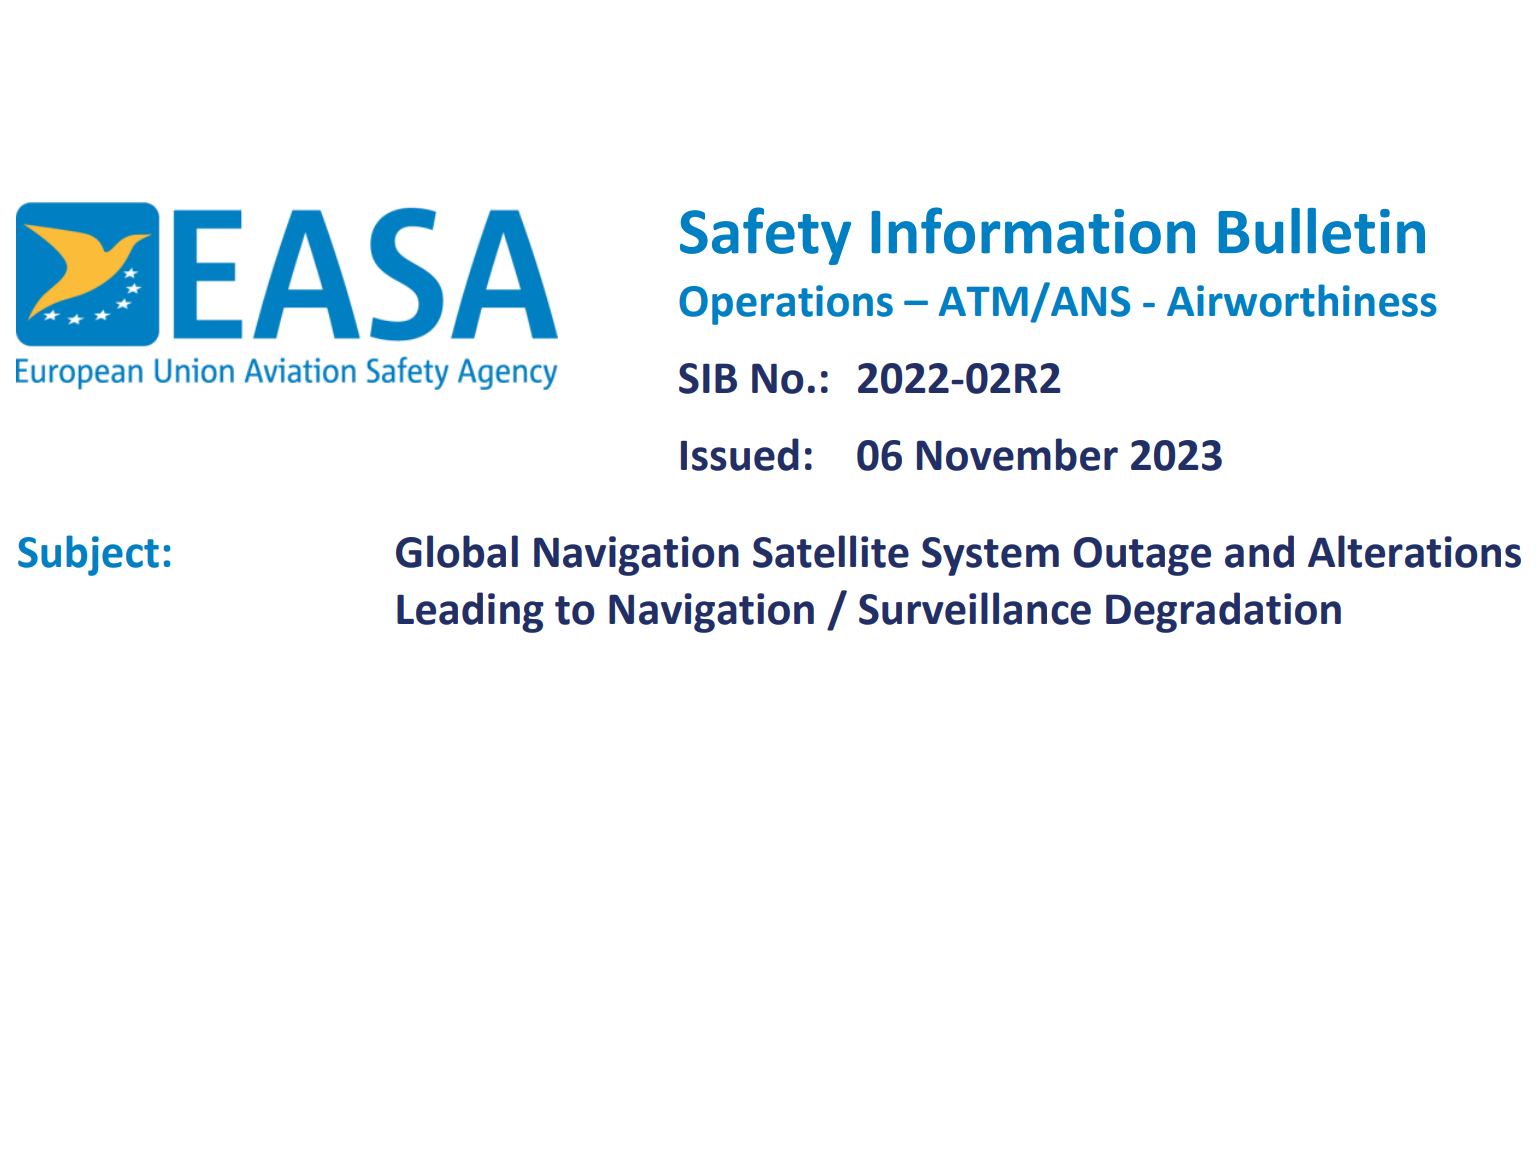 EASA varuje před závažností GNSS rušení